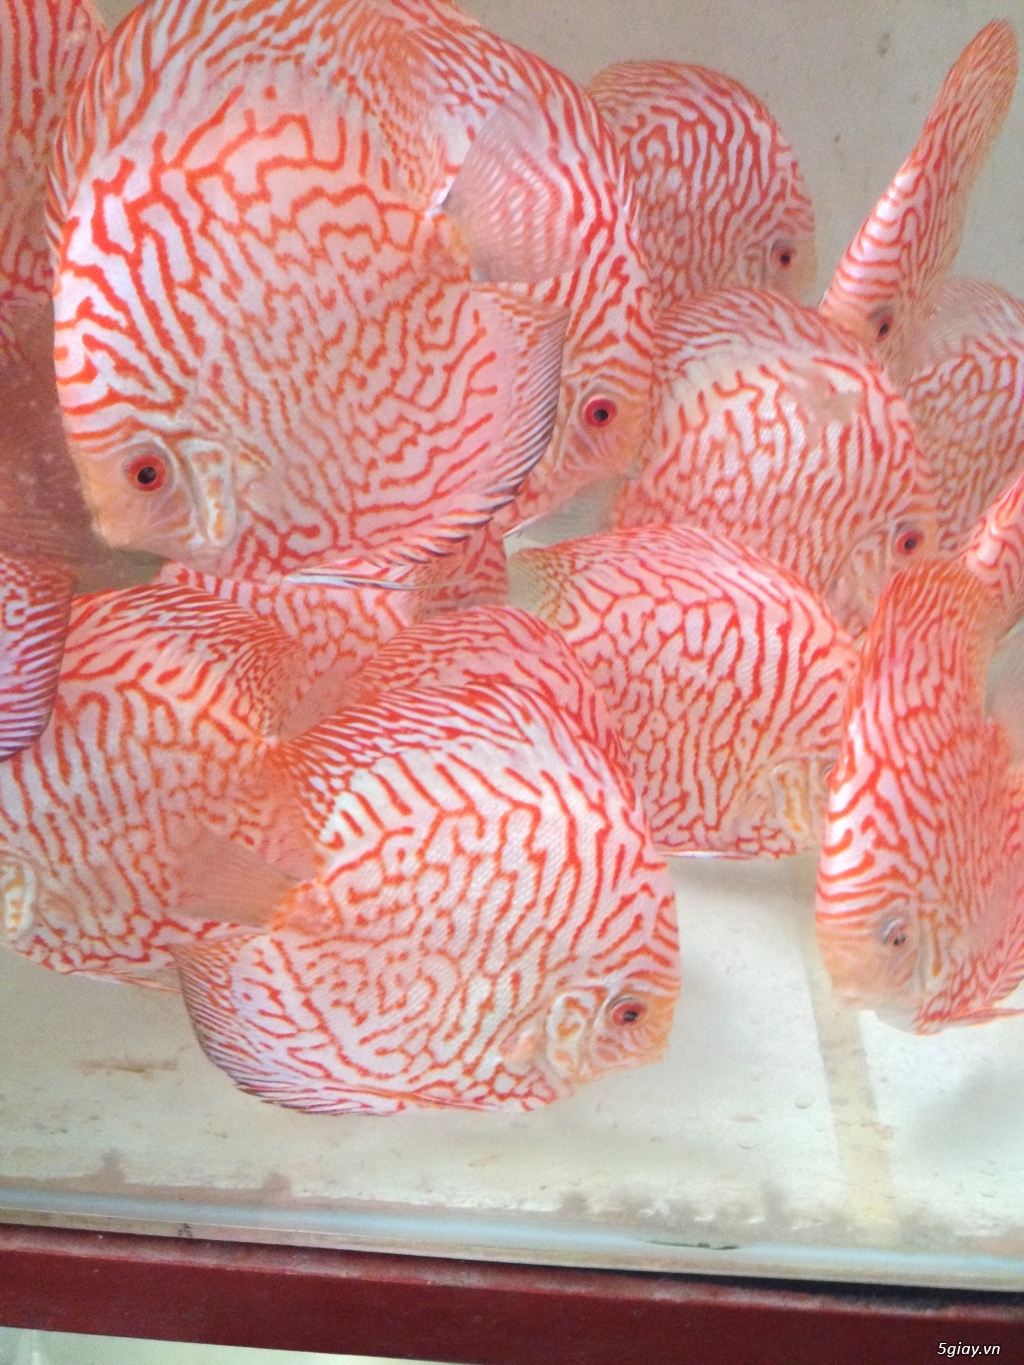 Bán cá Dĩa Giá Rẽ - Trại cá Dĩa Huỳnh Lễ tại SG bán các loại cá Dĩa - 4